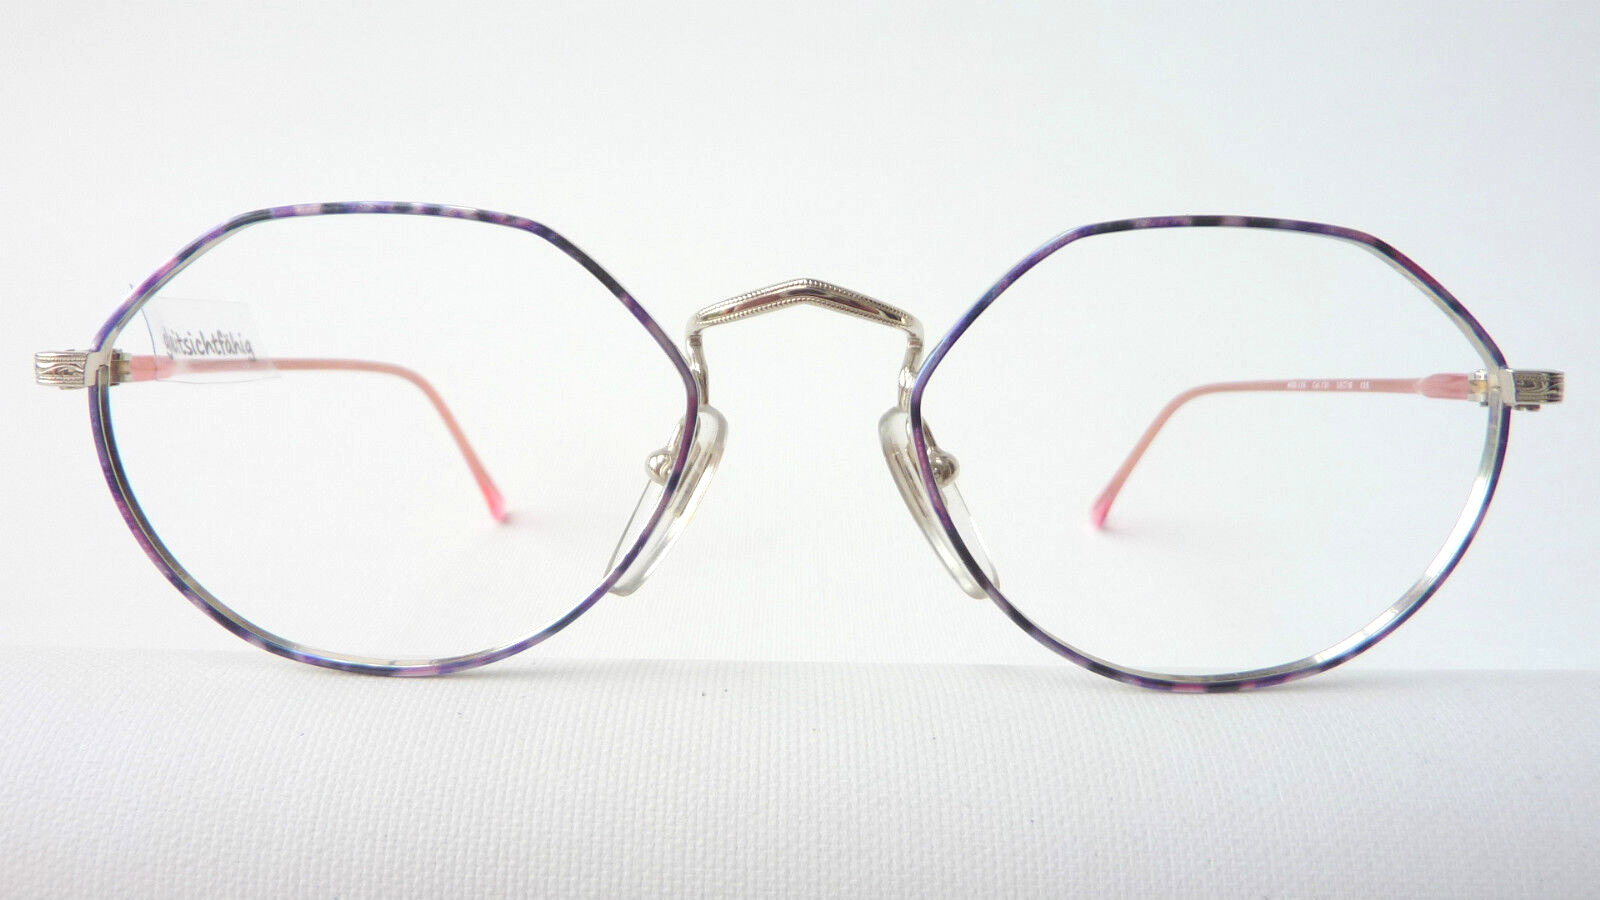 Flair Modellbrille 225 leicht mehreckig Metallfassung lila, Bügel rosafarben